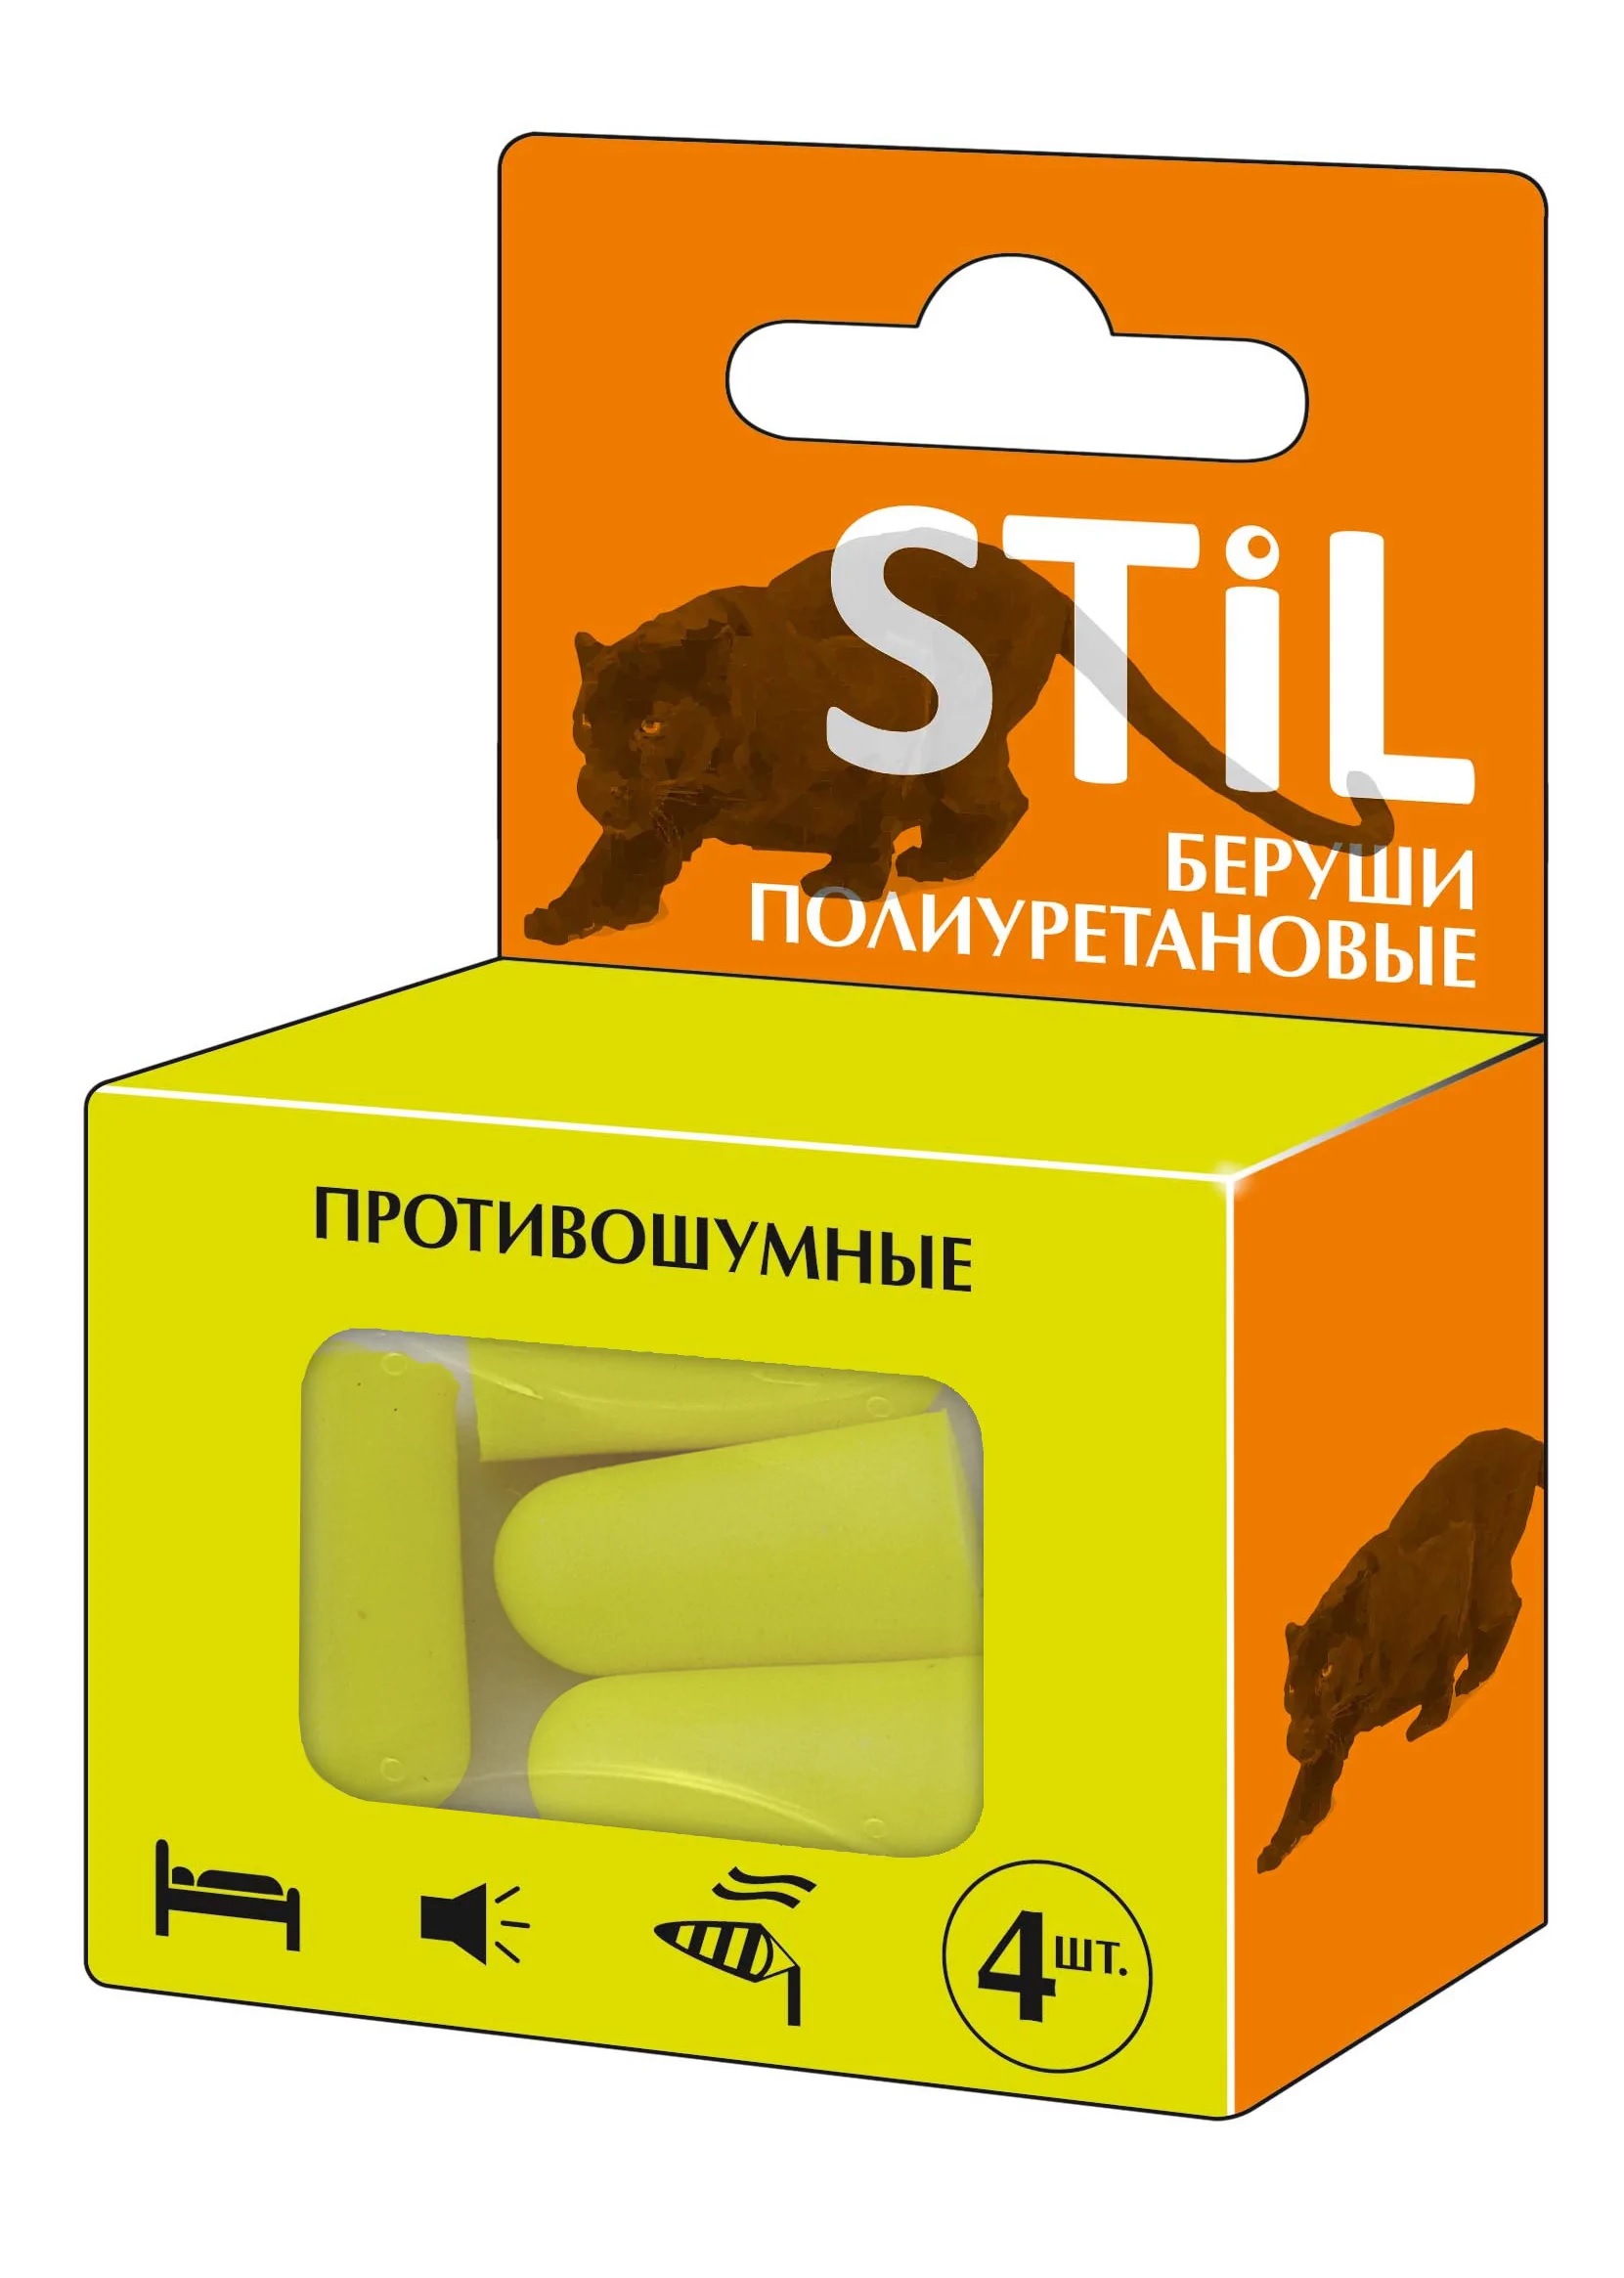  Stil (Стил) полиуретановые, 2 пары  в интернет-аптеке в .